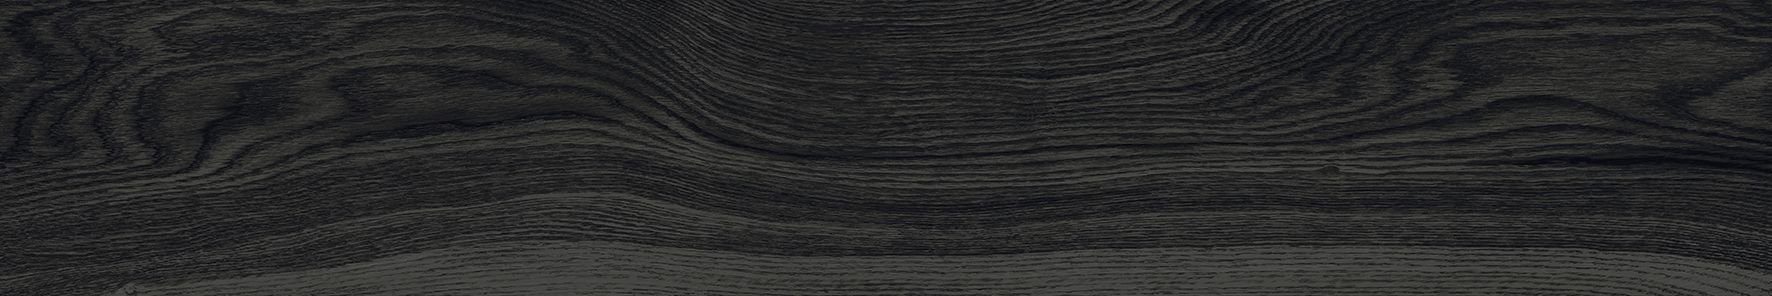 Плитка из керамогранита Loft K-1620/MR Soho чёрный для стен и пола, универсально 20x120